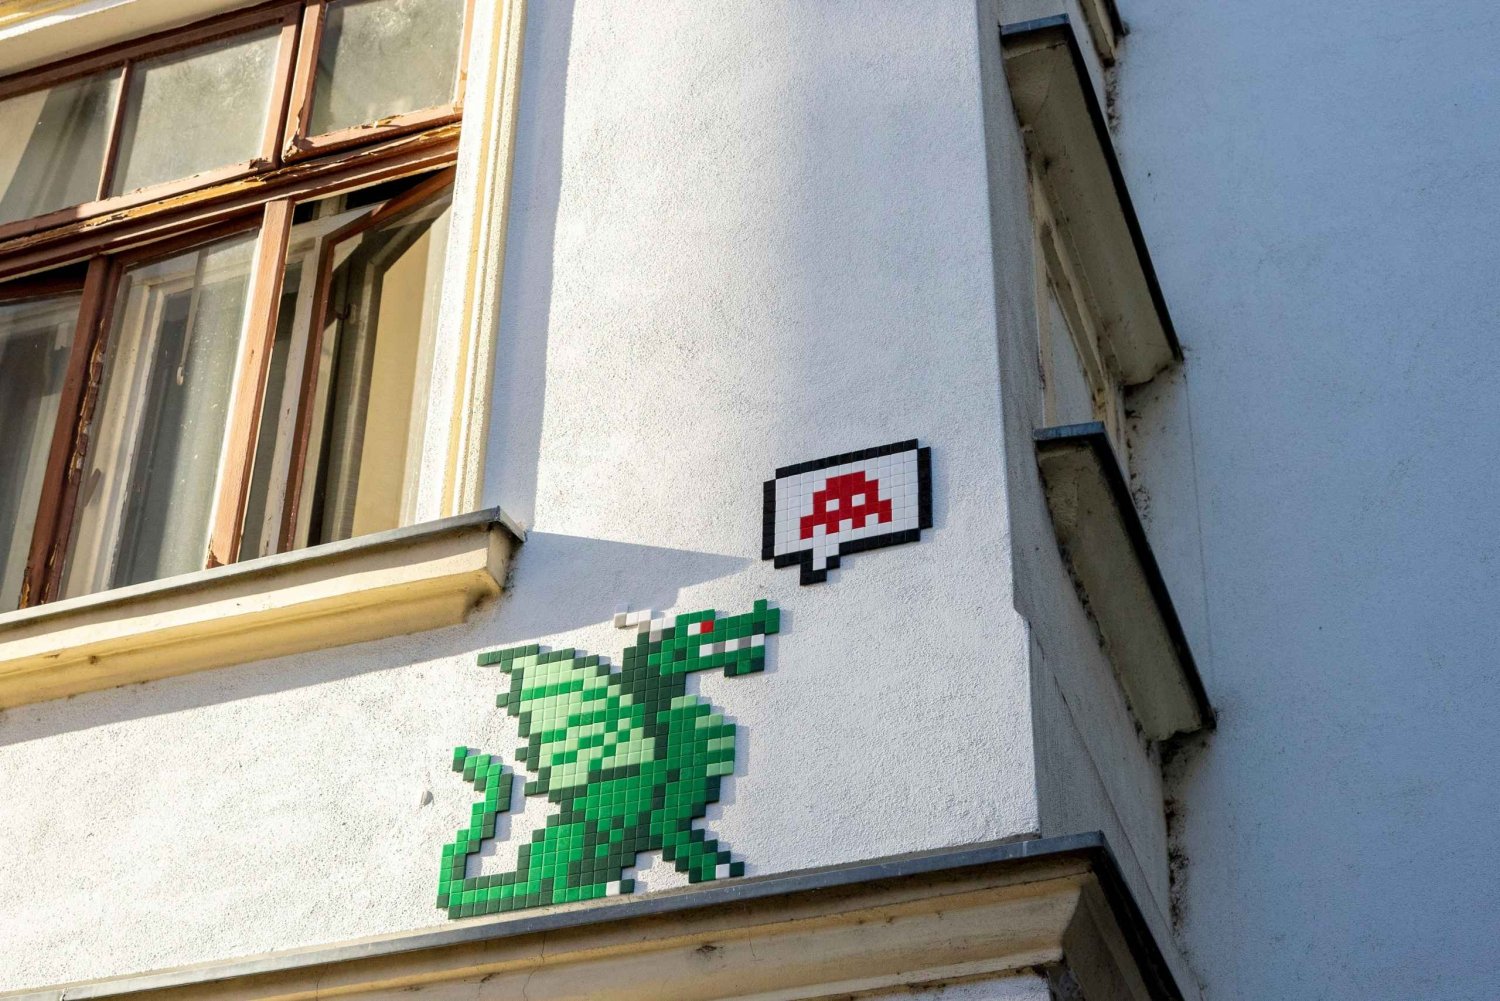 Ljubljana: Rumindtrængerens mosaikker